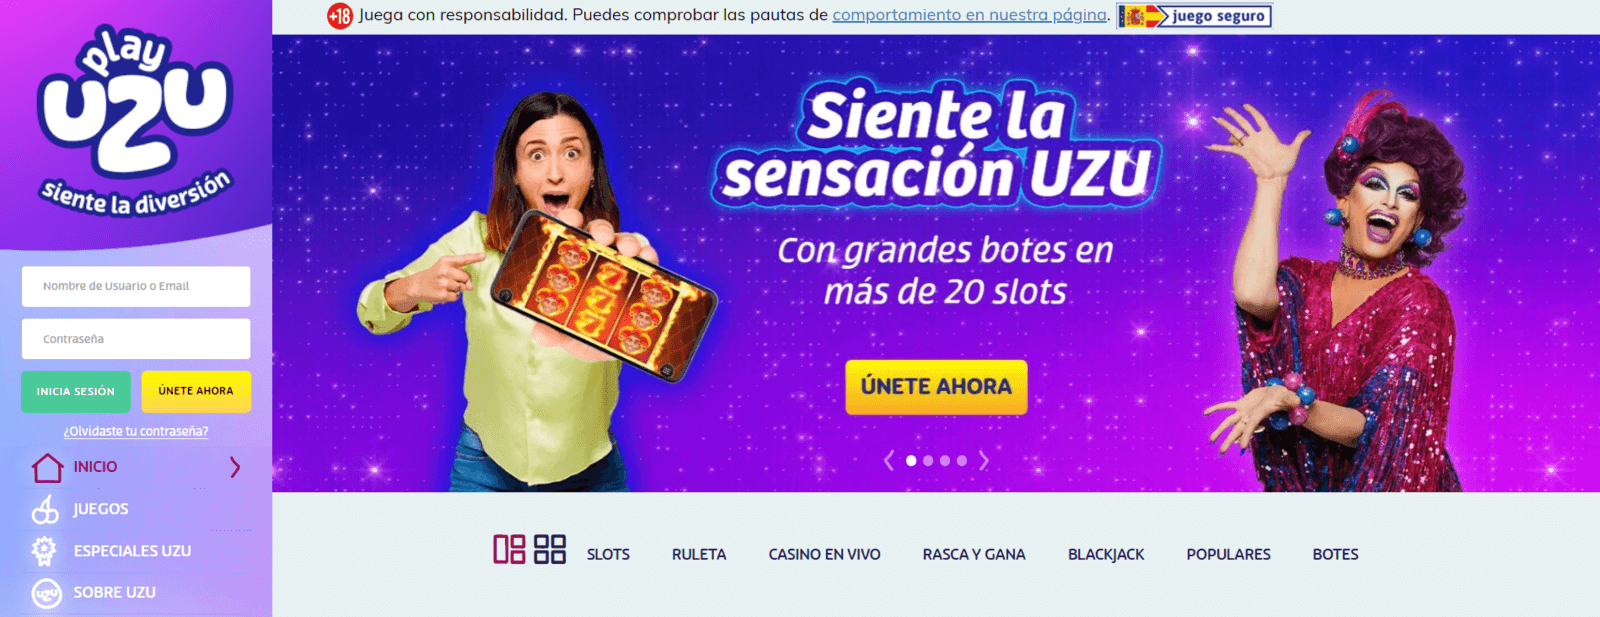 Promociones de casino Play Uzu.es para los jugadores de España 